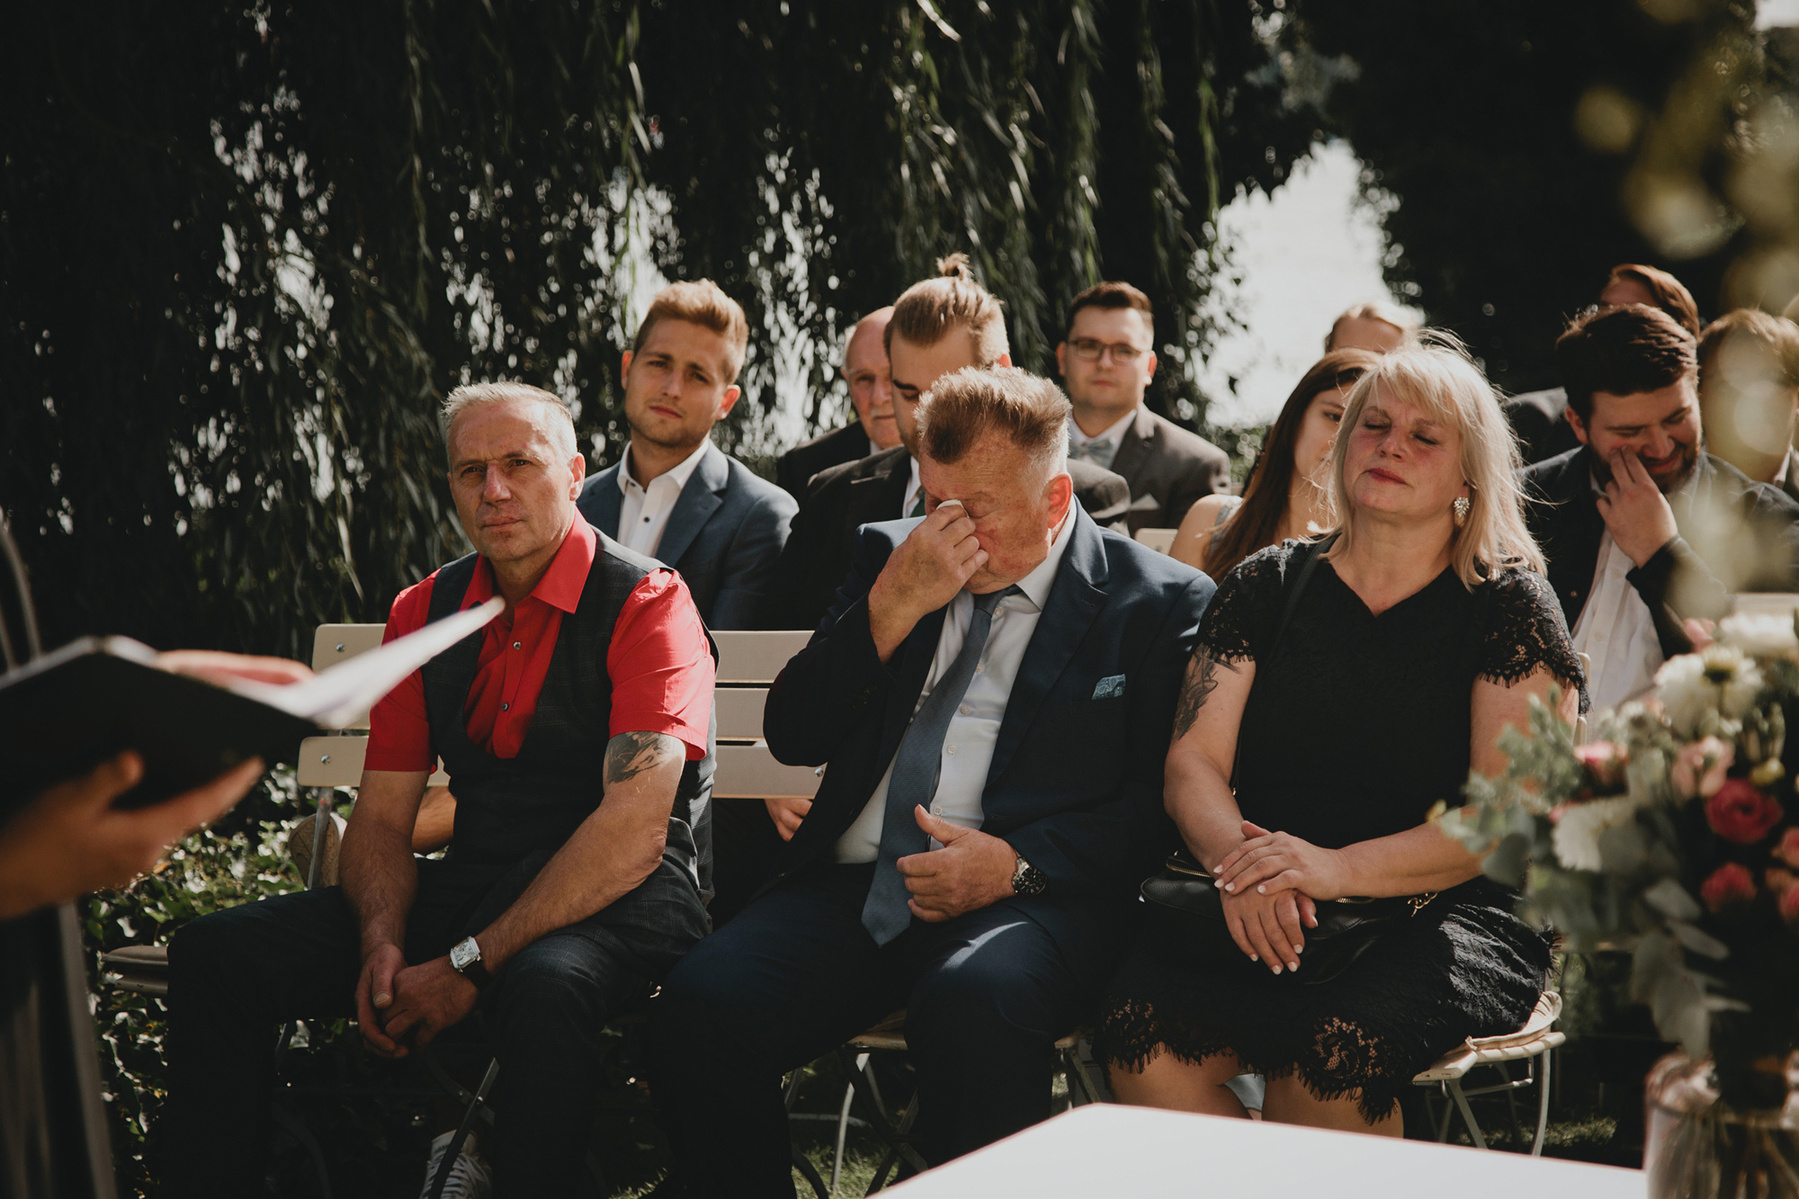 Emotionale Momentaufnahme eines weinenden Hochzeitsgasts, eingefangen von einer Hochzeitsfotografin aus Berlin.